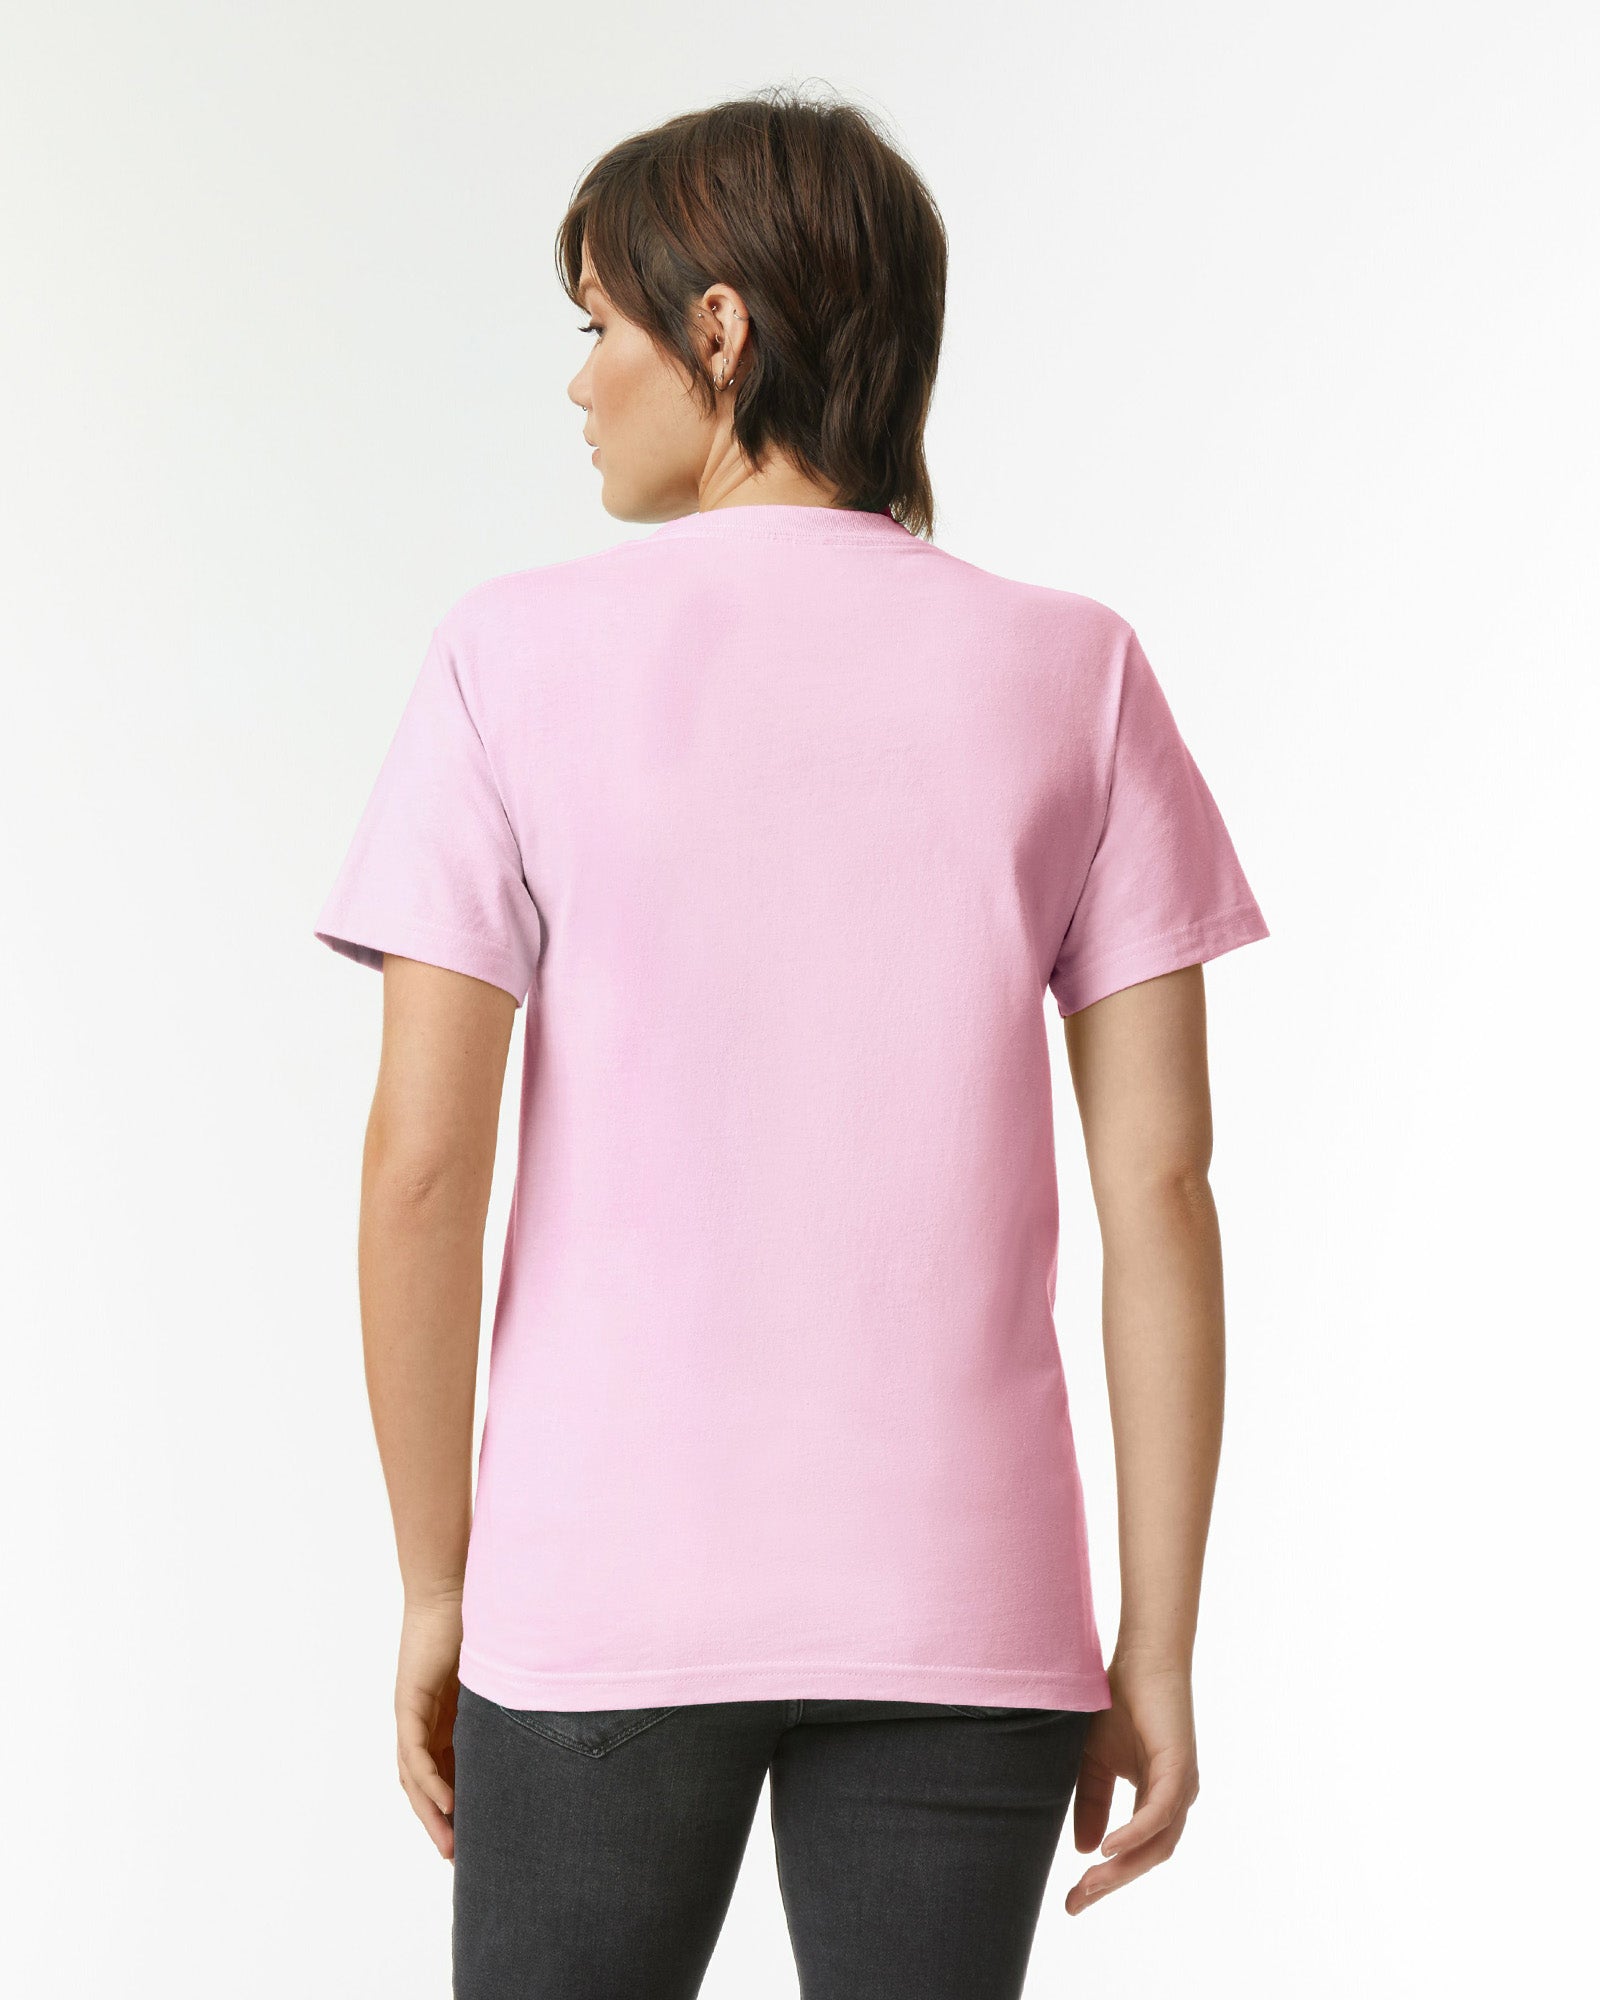 Heavyweight Unisex T-Shirt - Pink